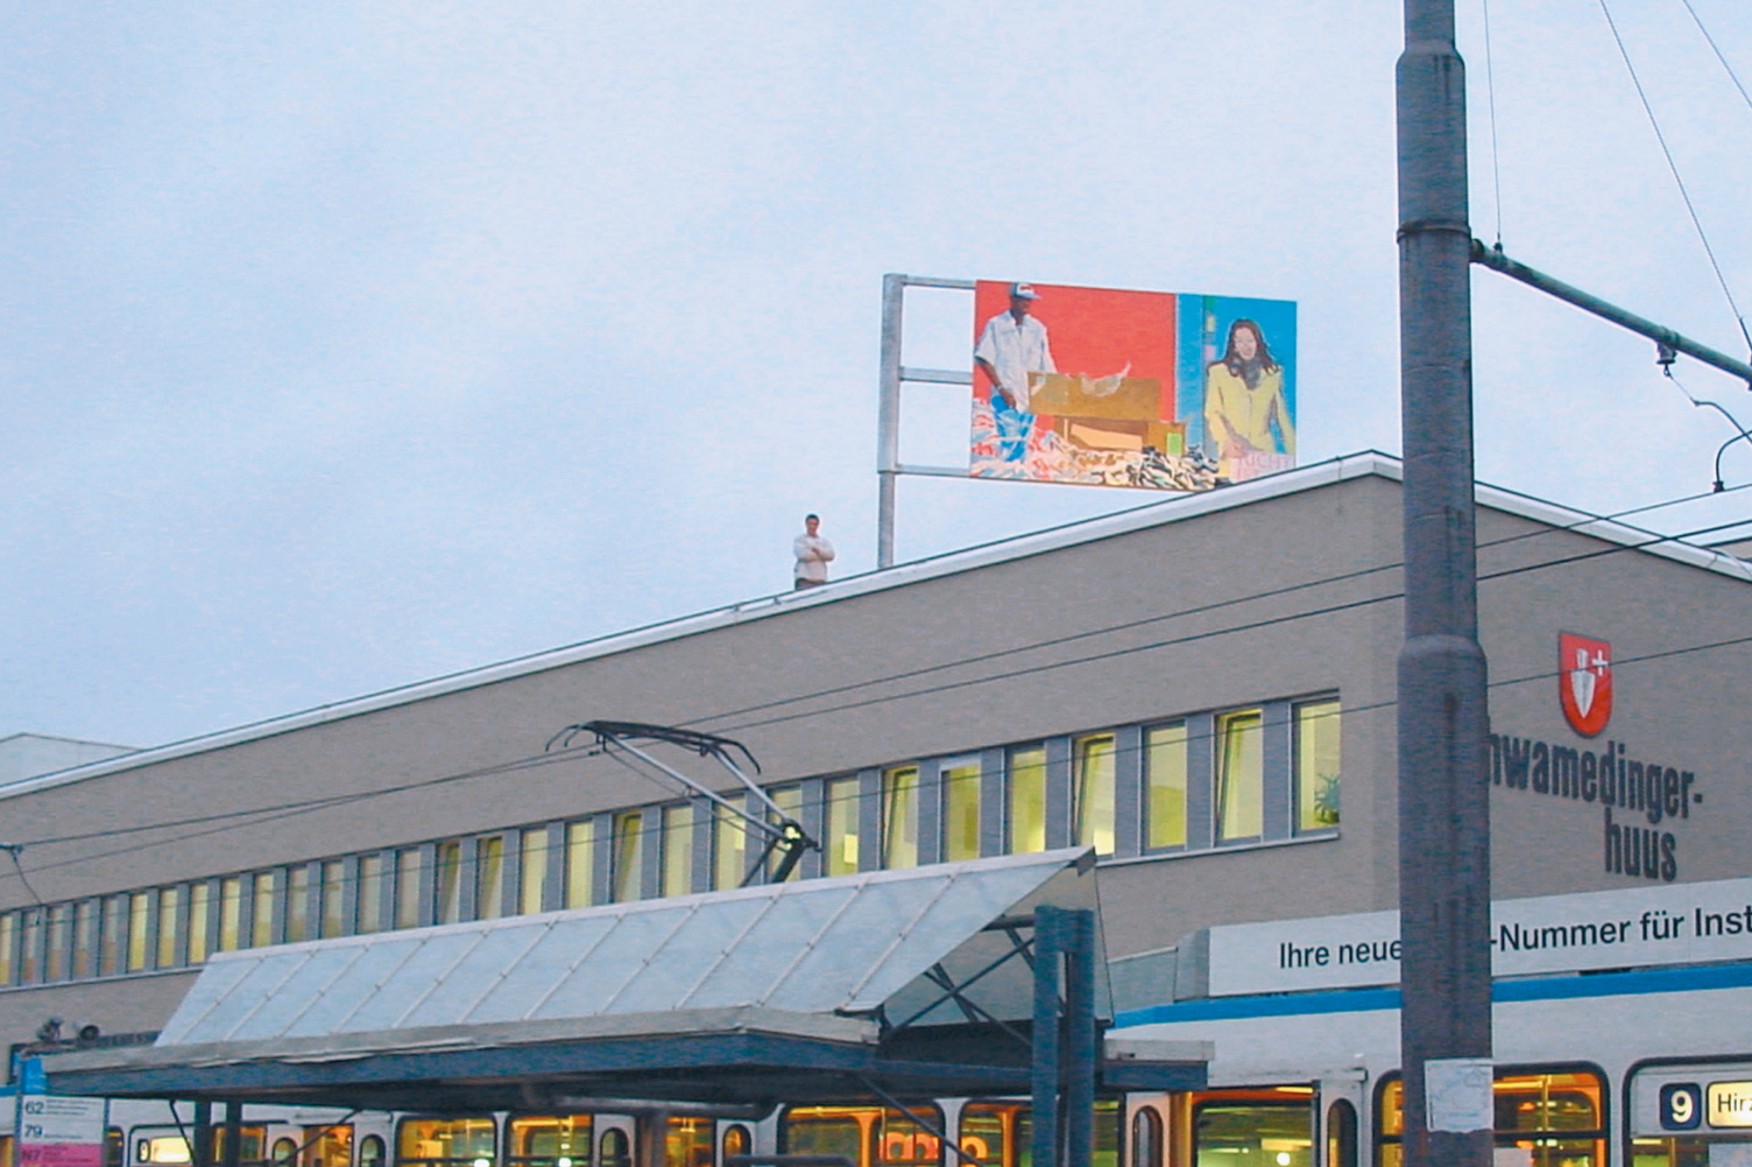 Tramstation, dahinter Gebäude mit farbig bemaltem Bild auf dem Dach